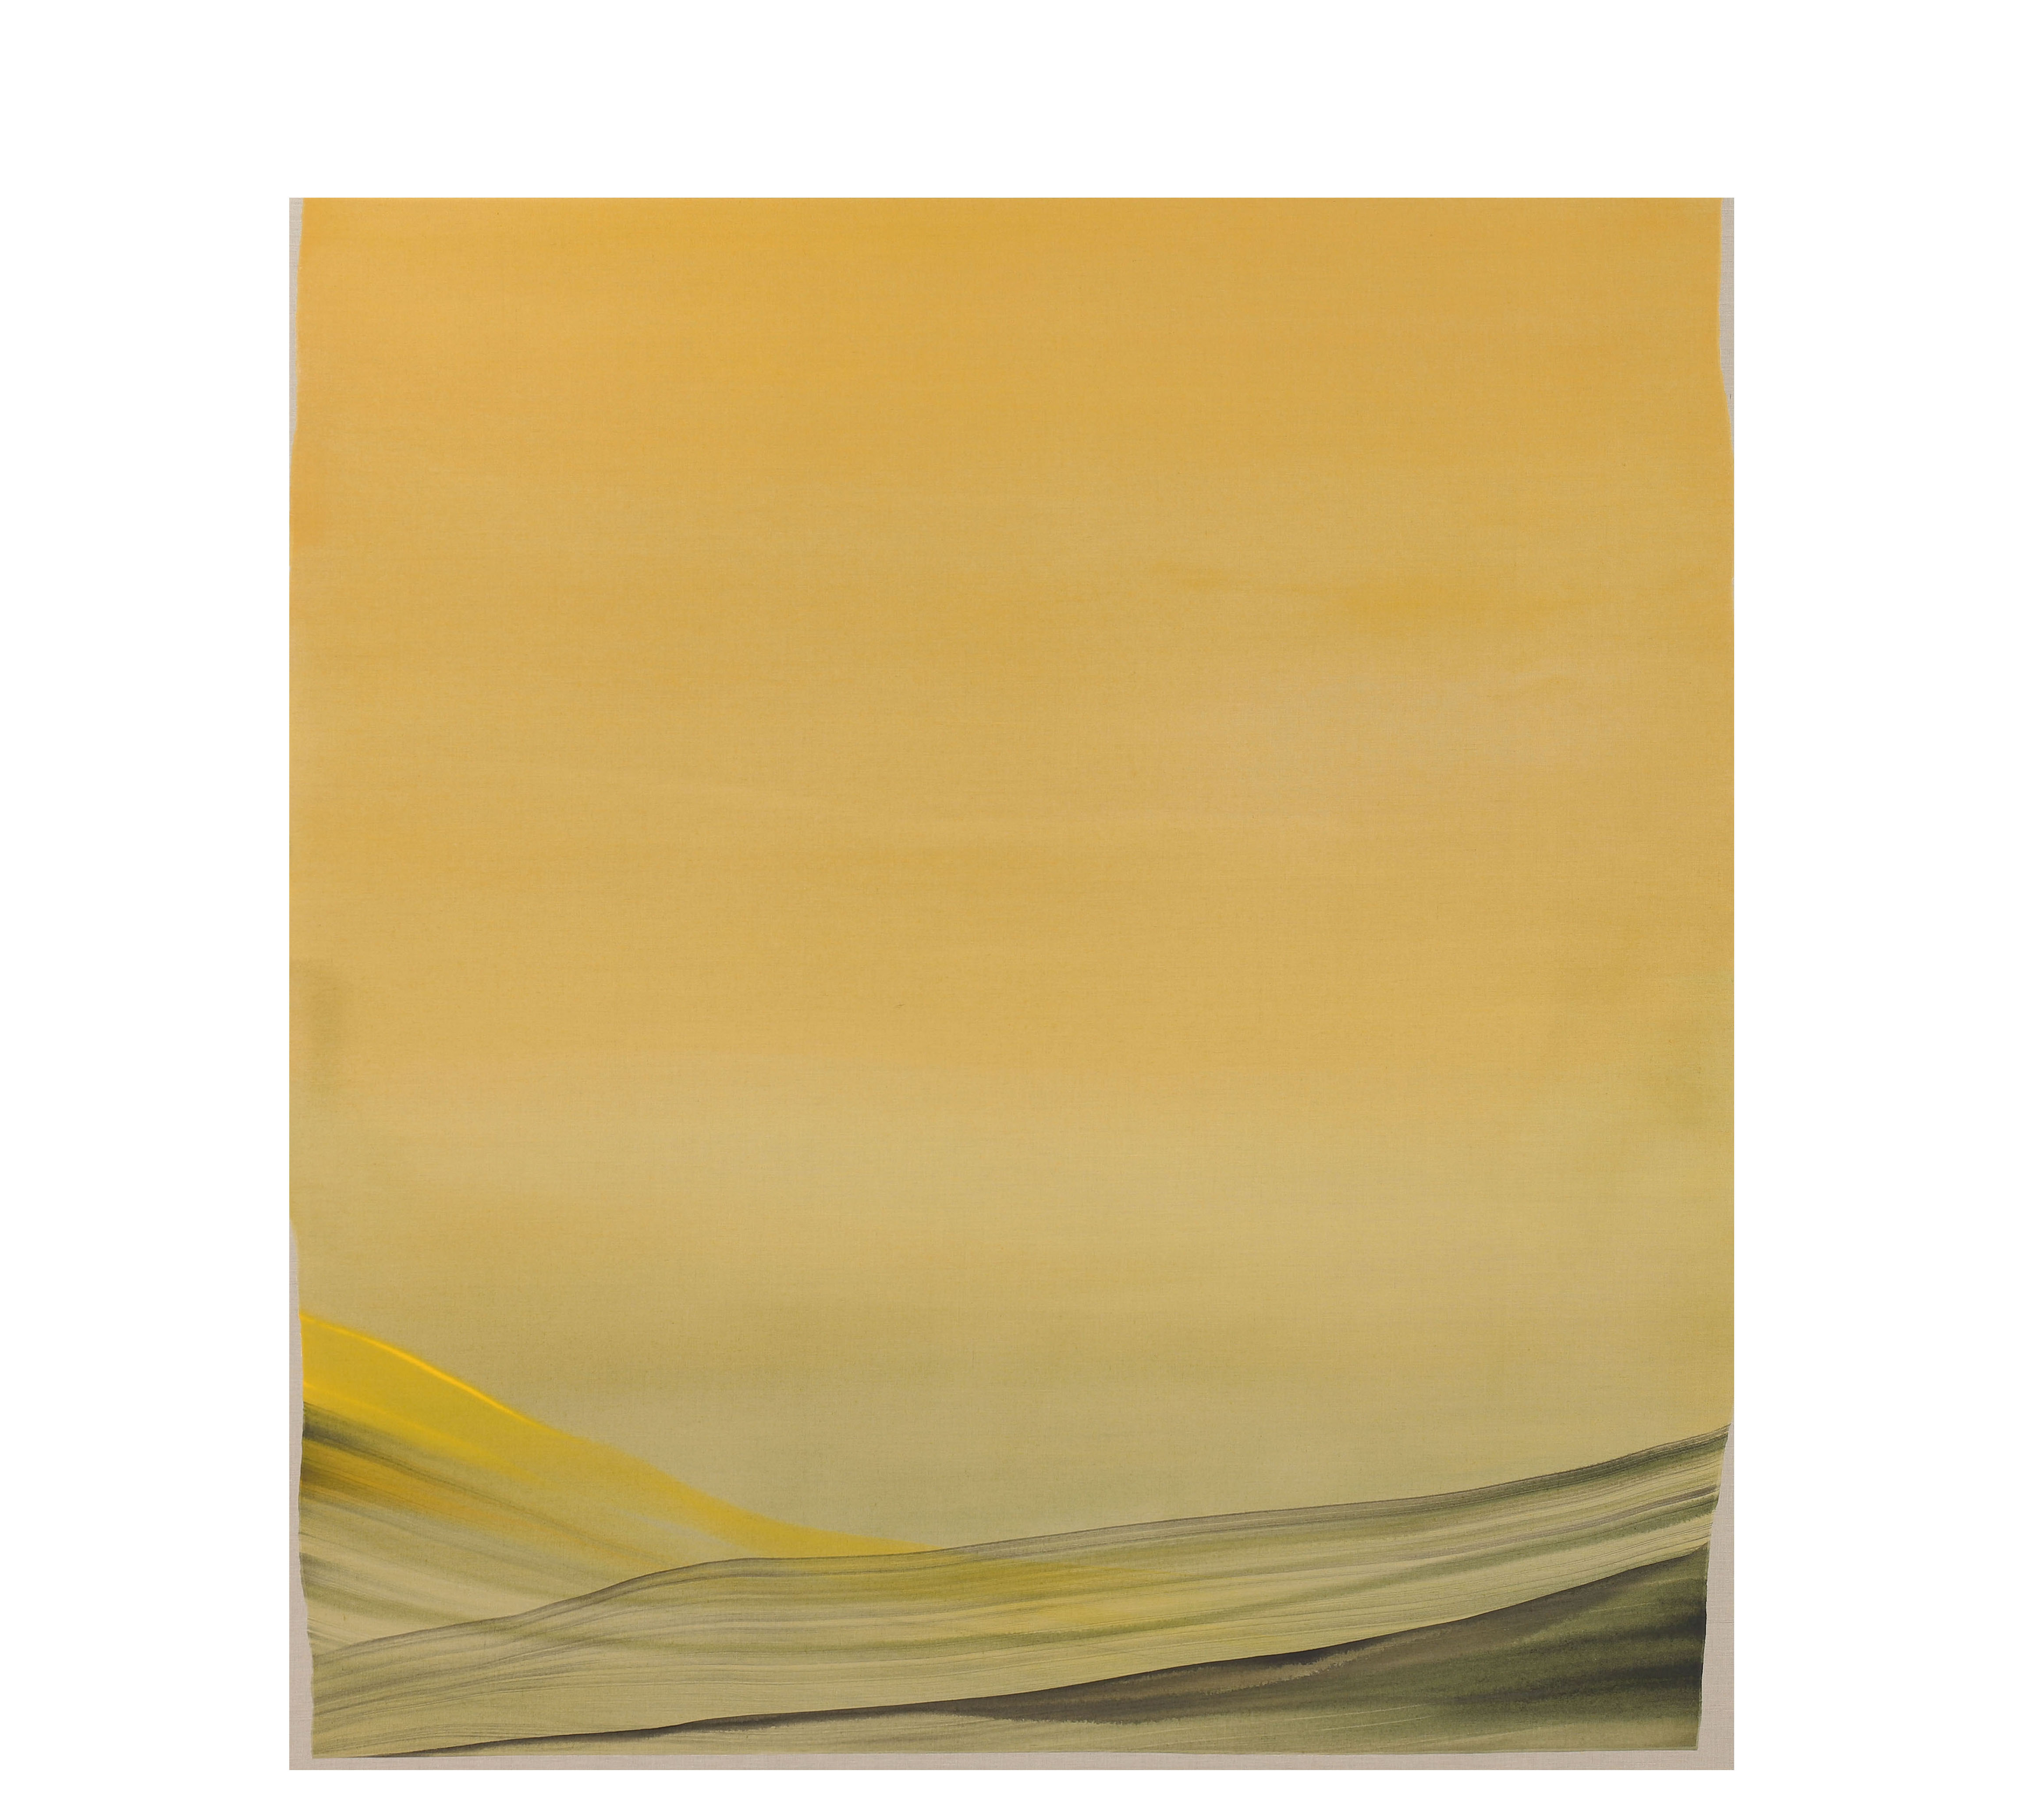 Vadum II. 2019. Acrílico sobre lino. 190 x 174 cm. Nico Munuera.